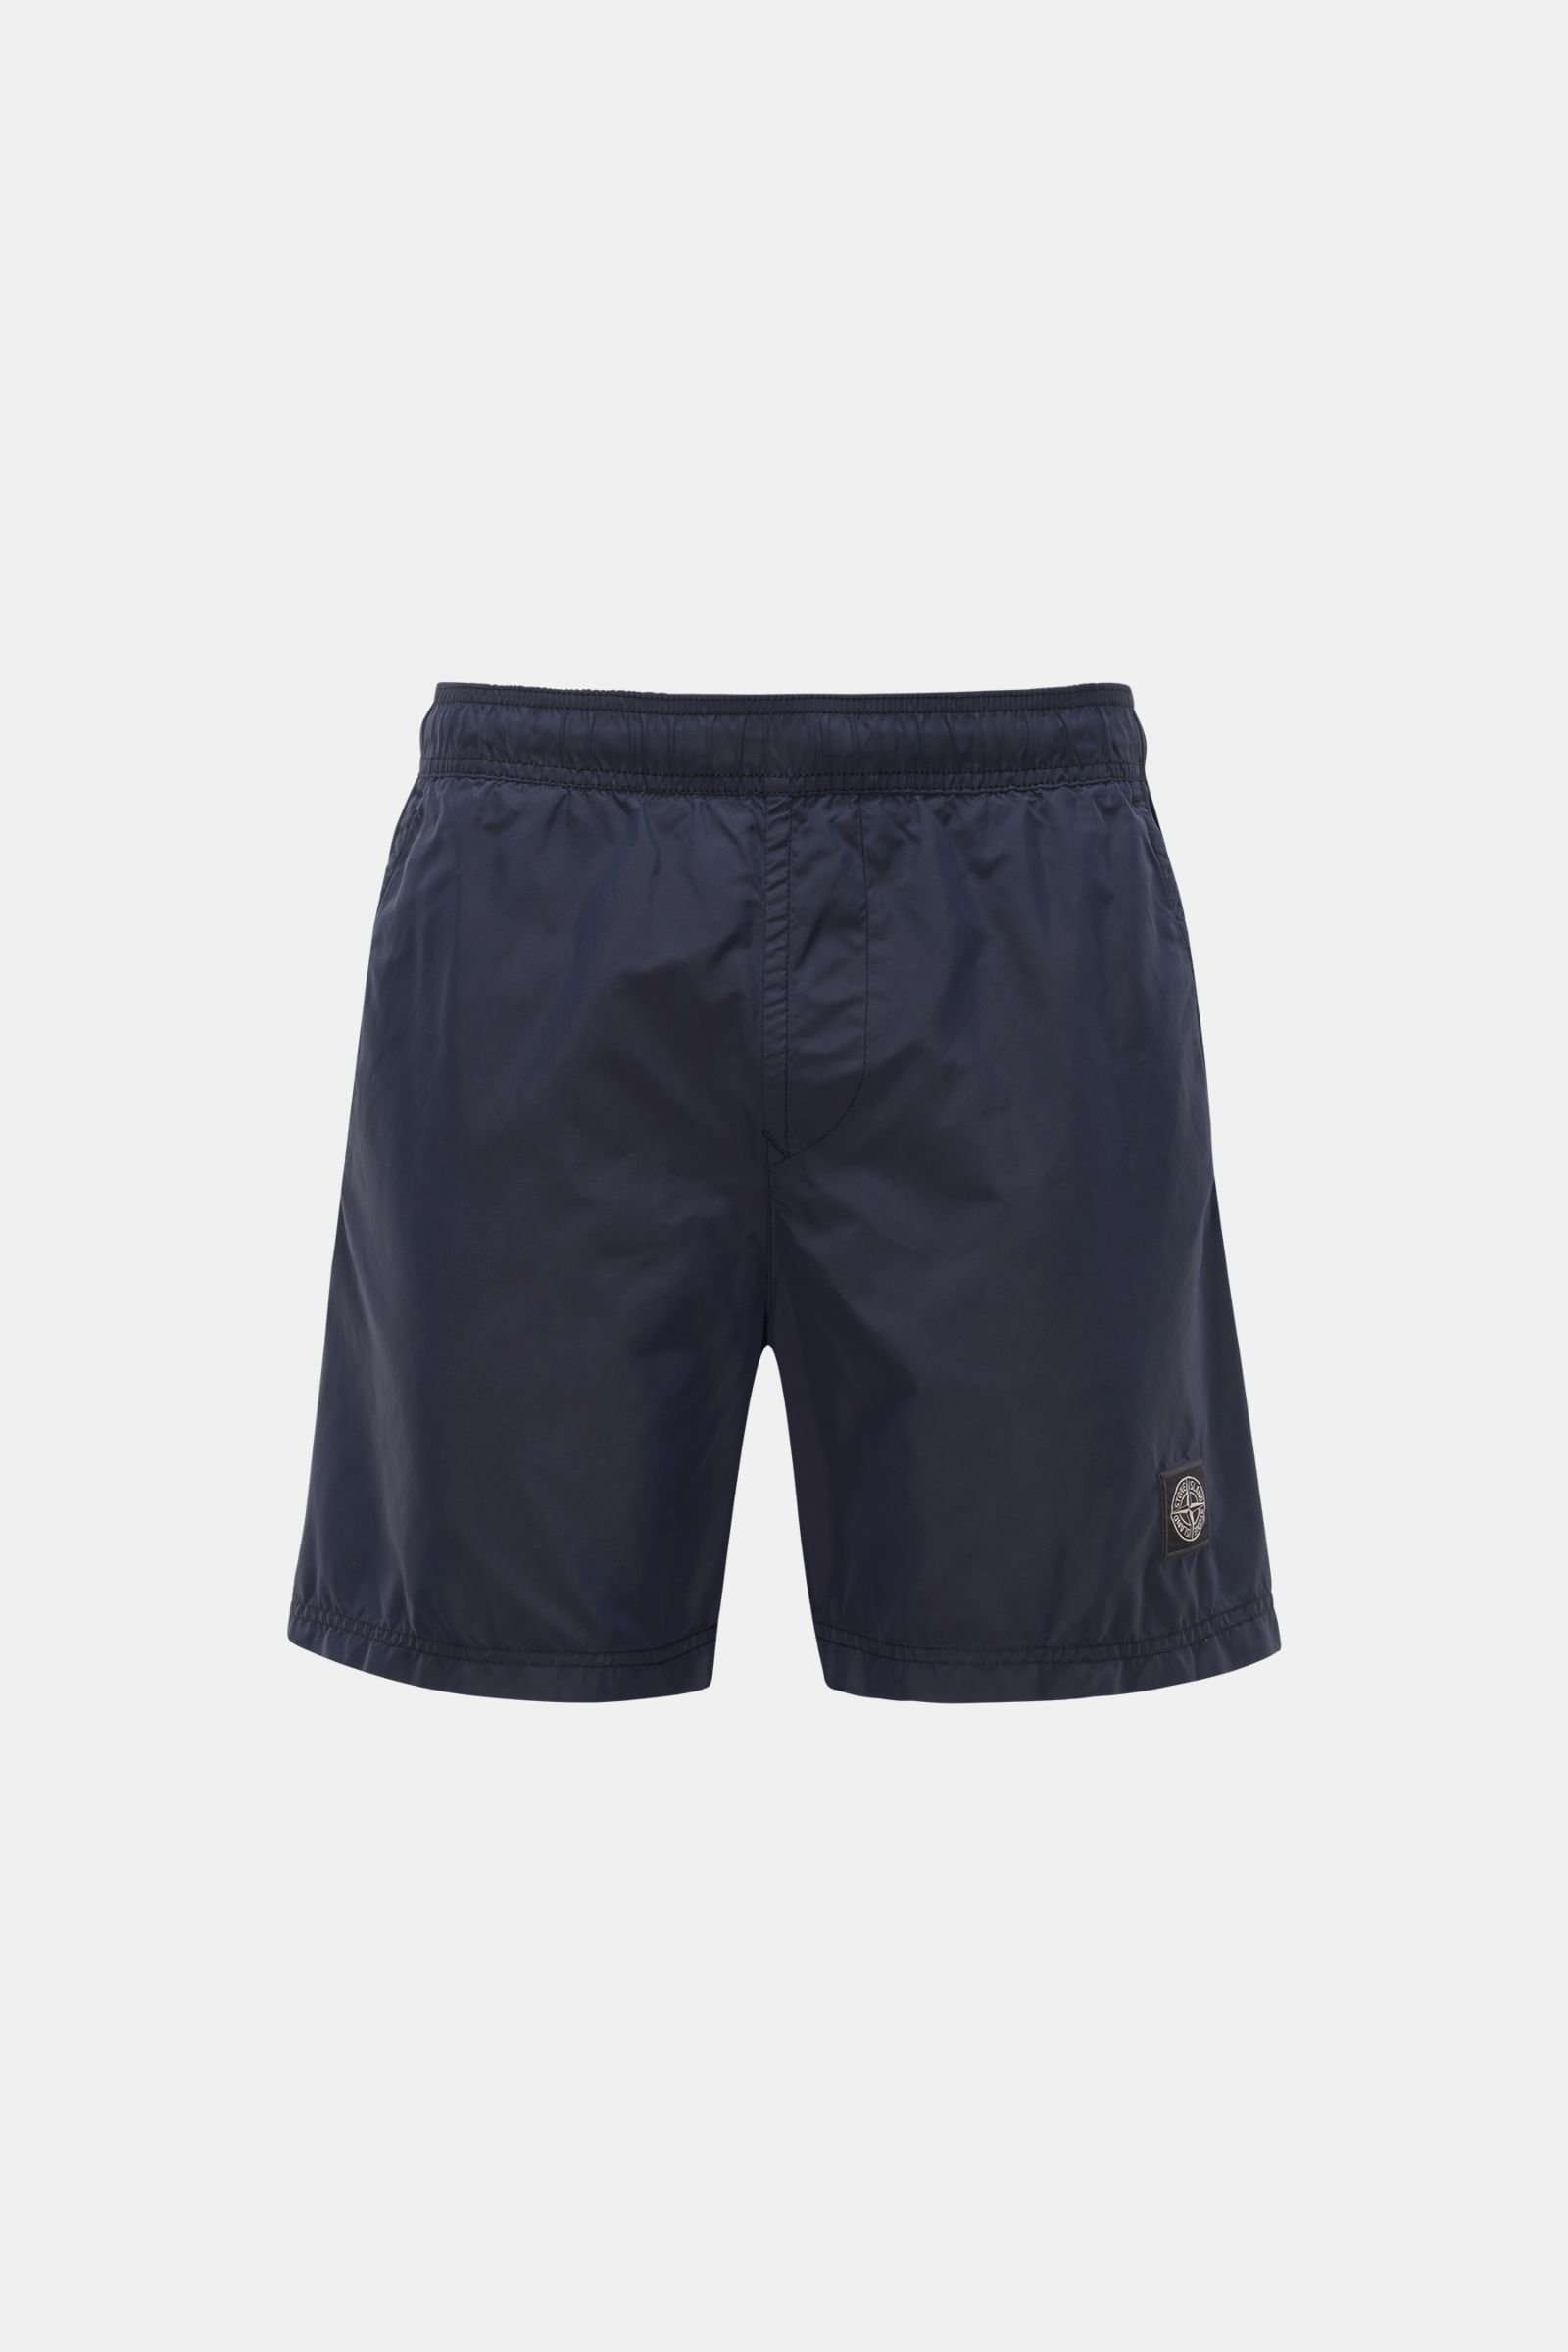 Swim shorts navy